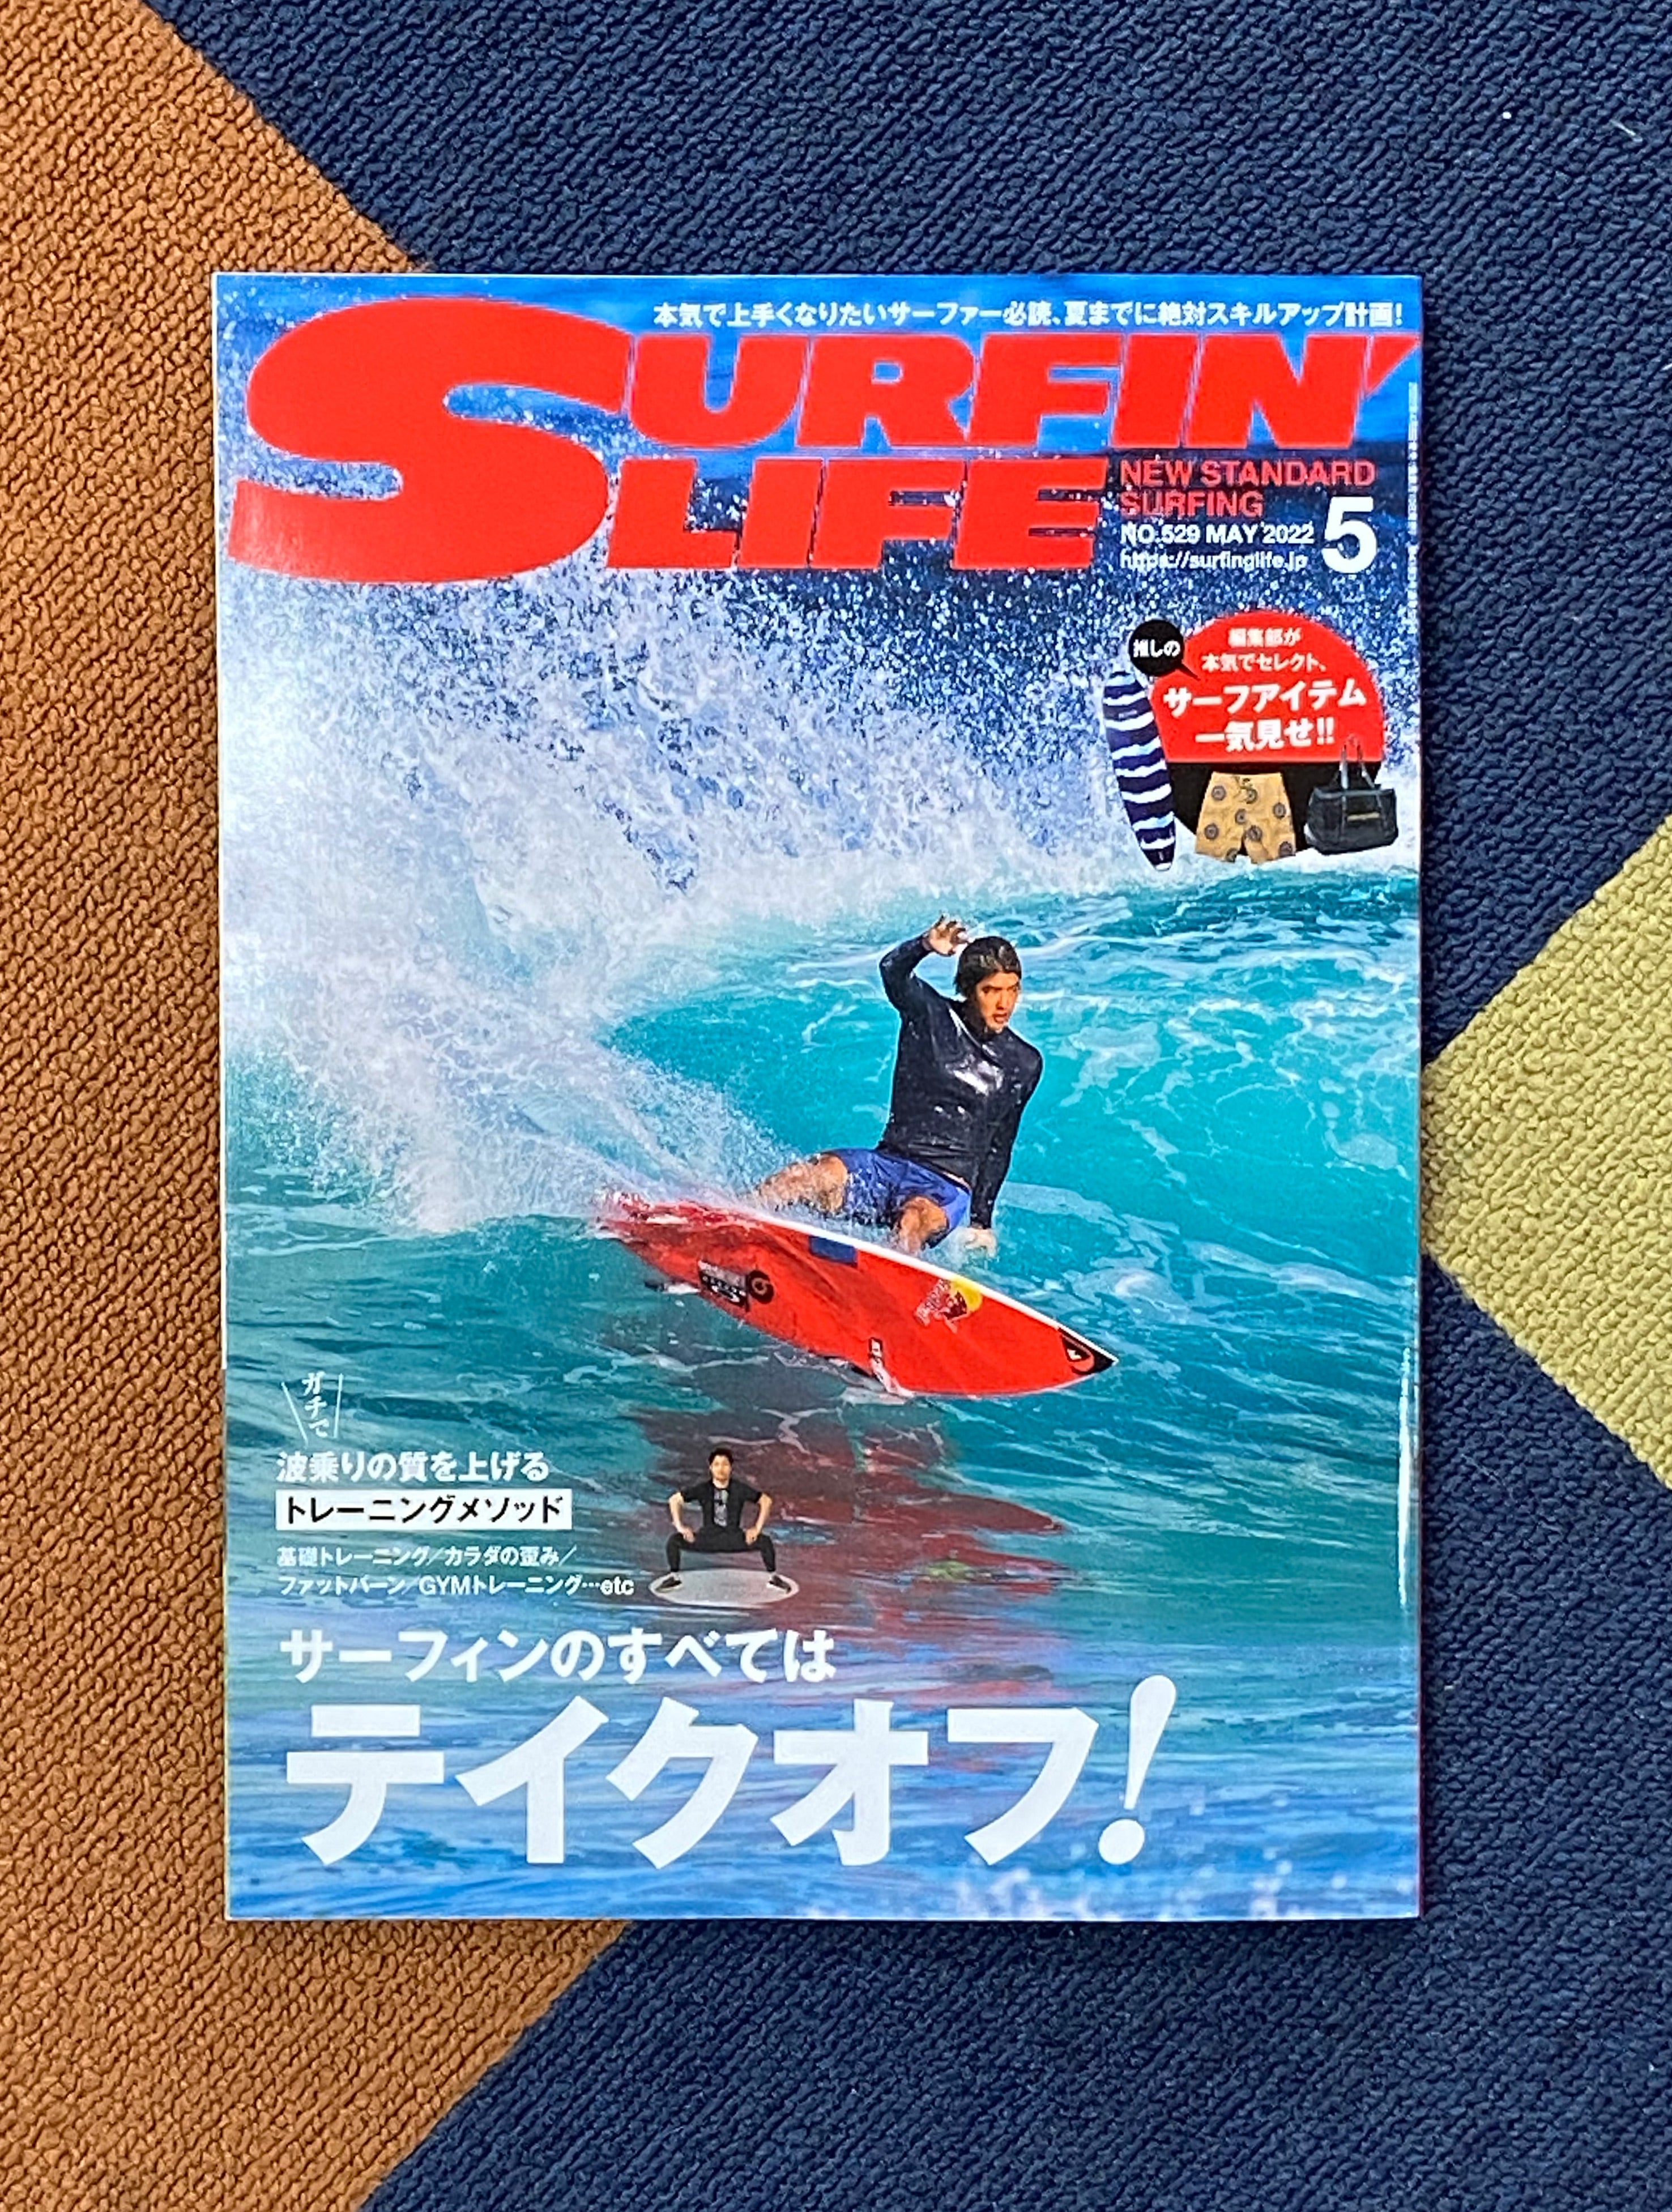 2022年5月号の雑誌「SURFIN' LIFE（サーフィン ライフ）」に、JUSTINE